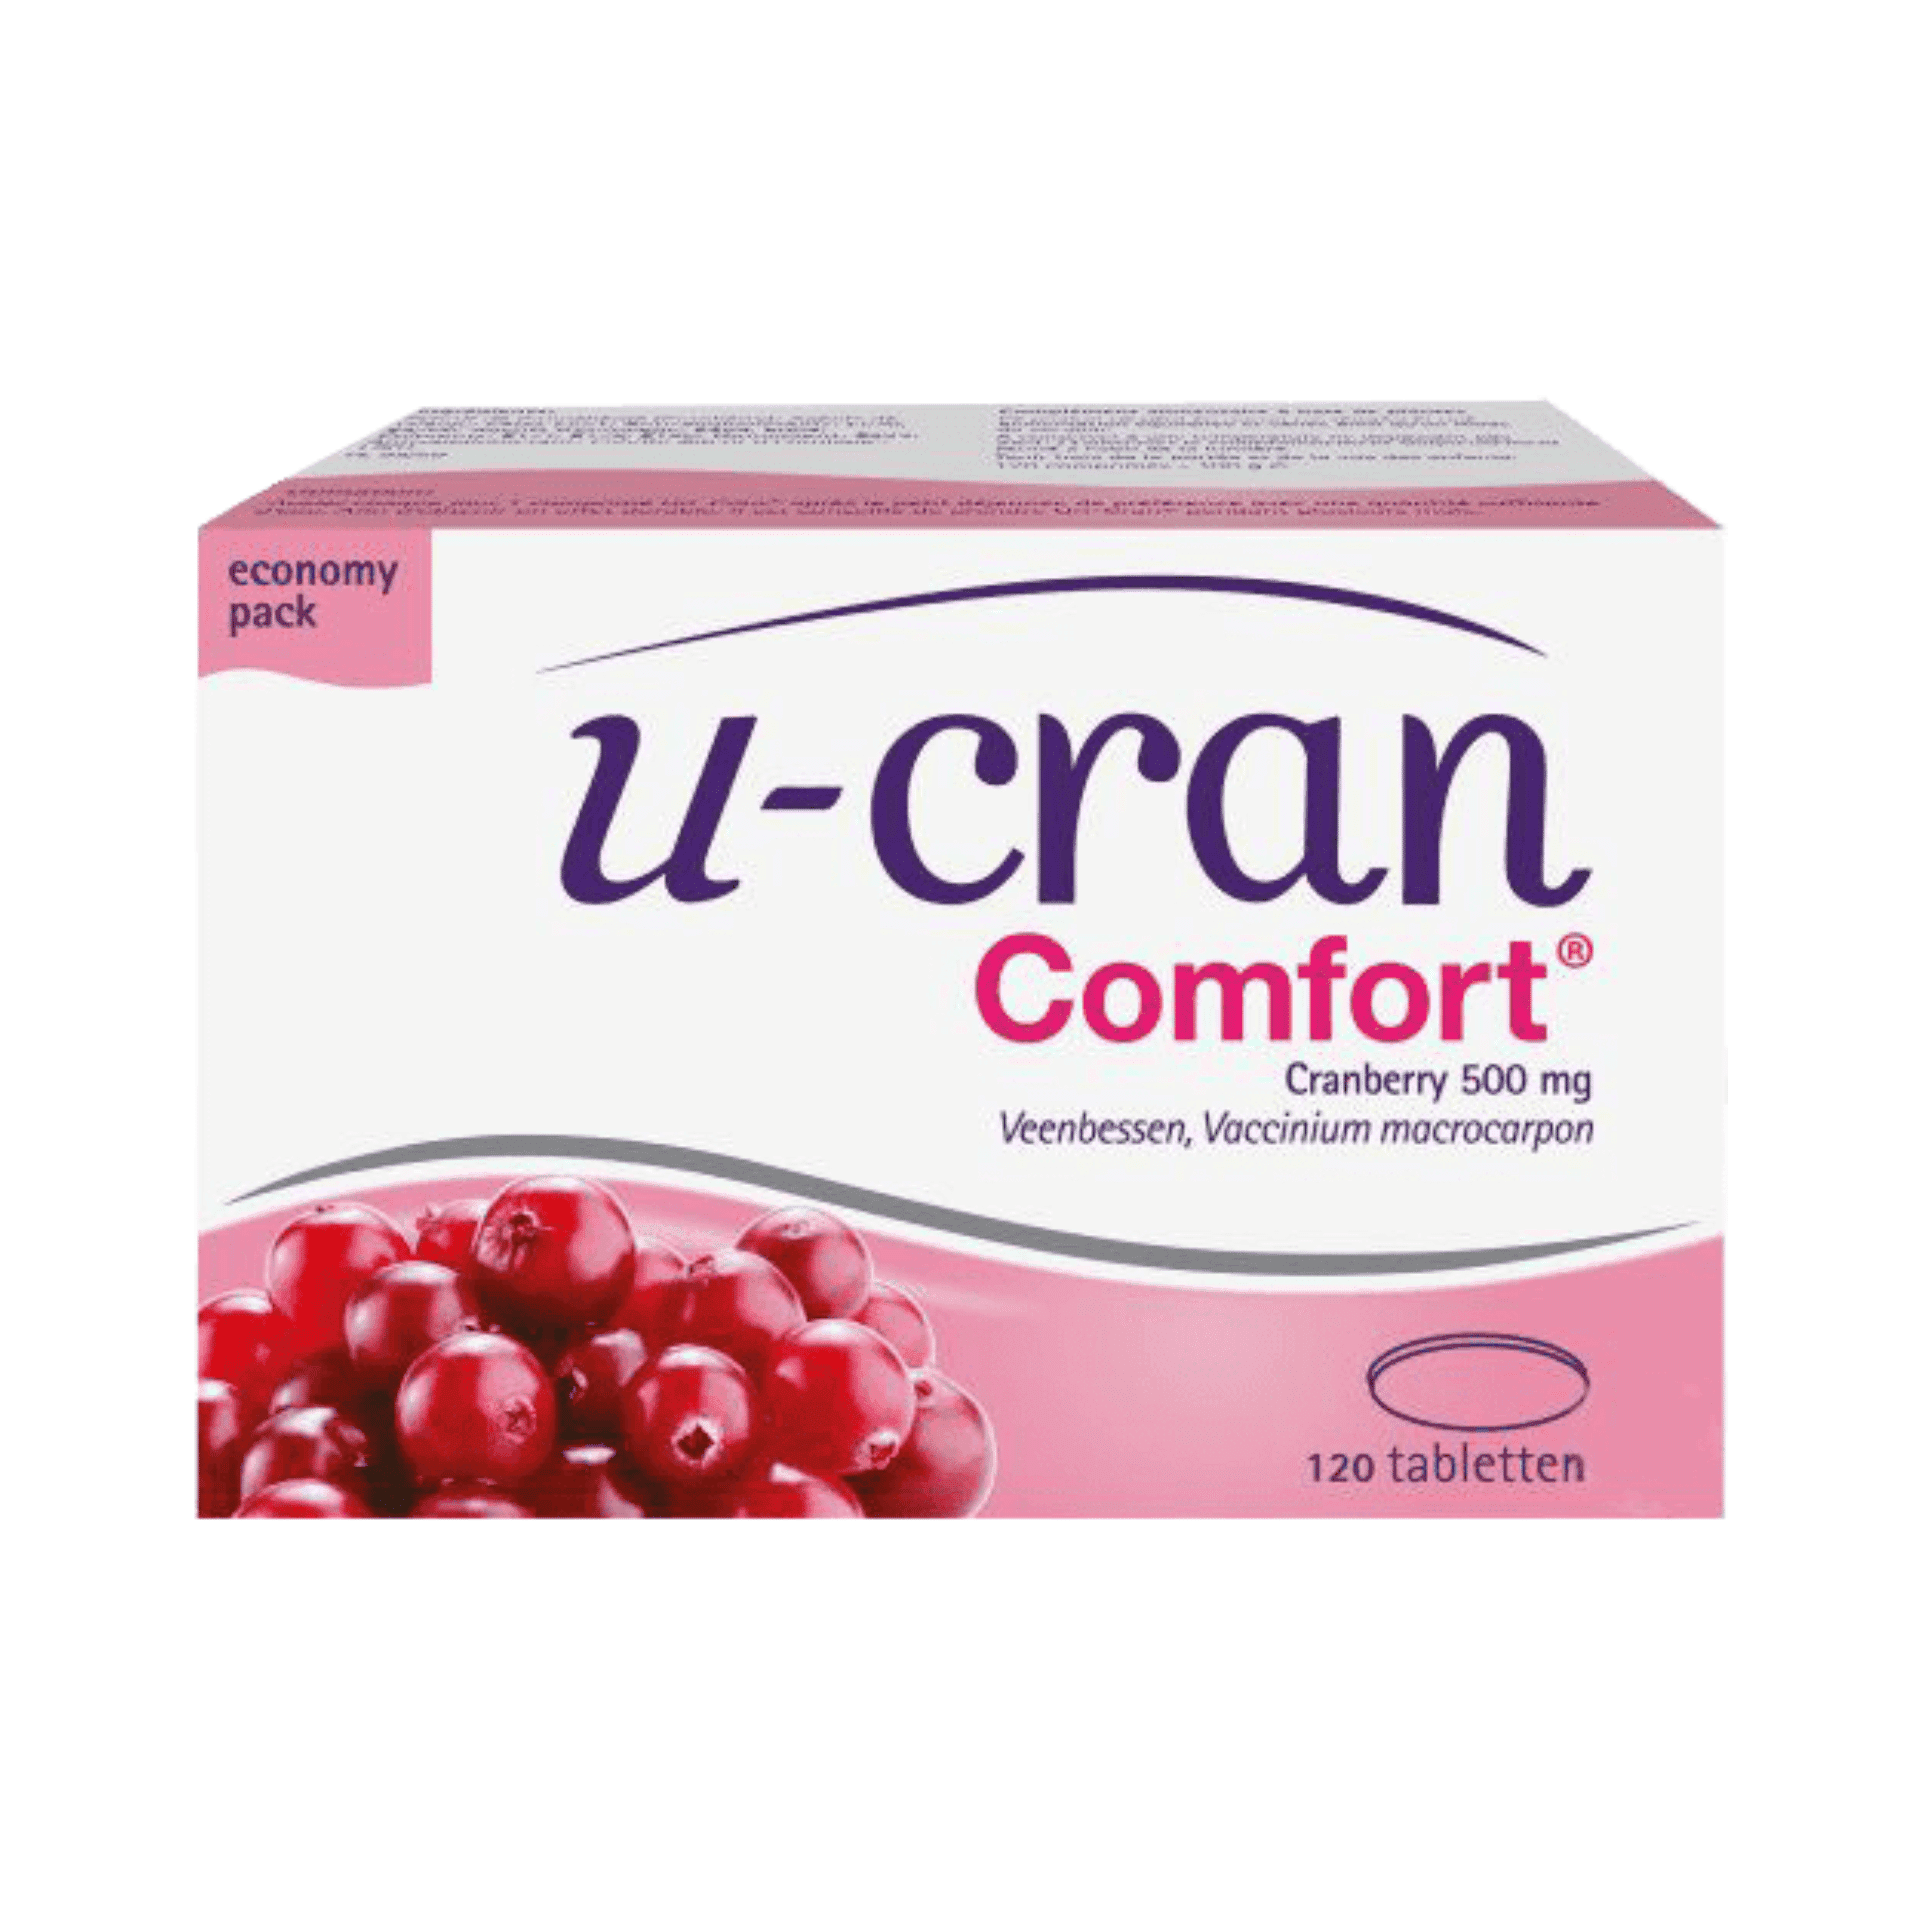 U-cran Confort